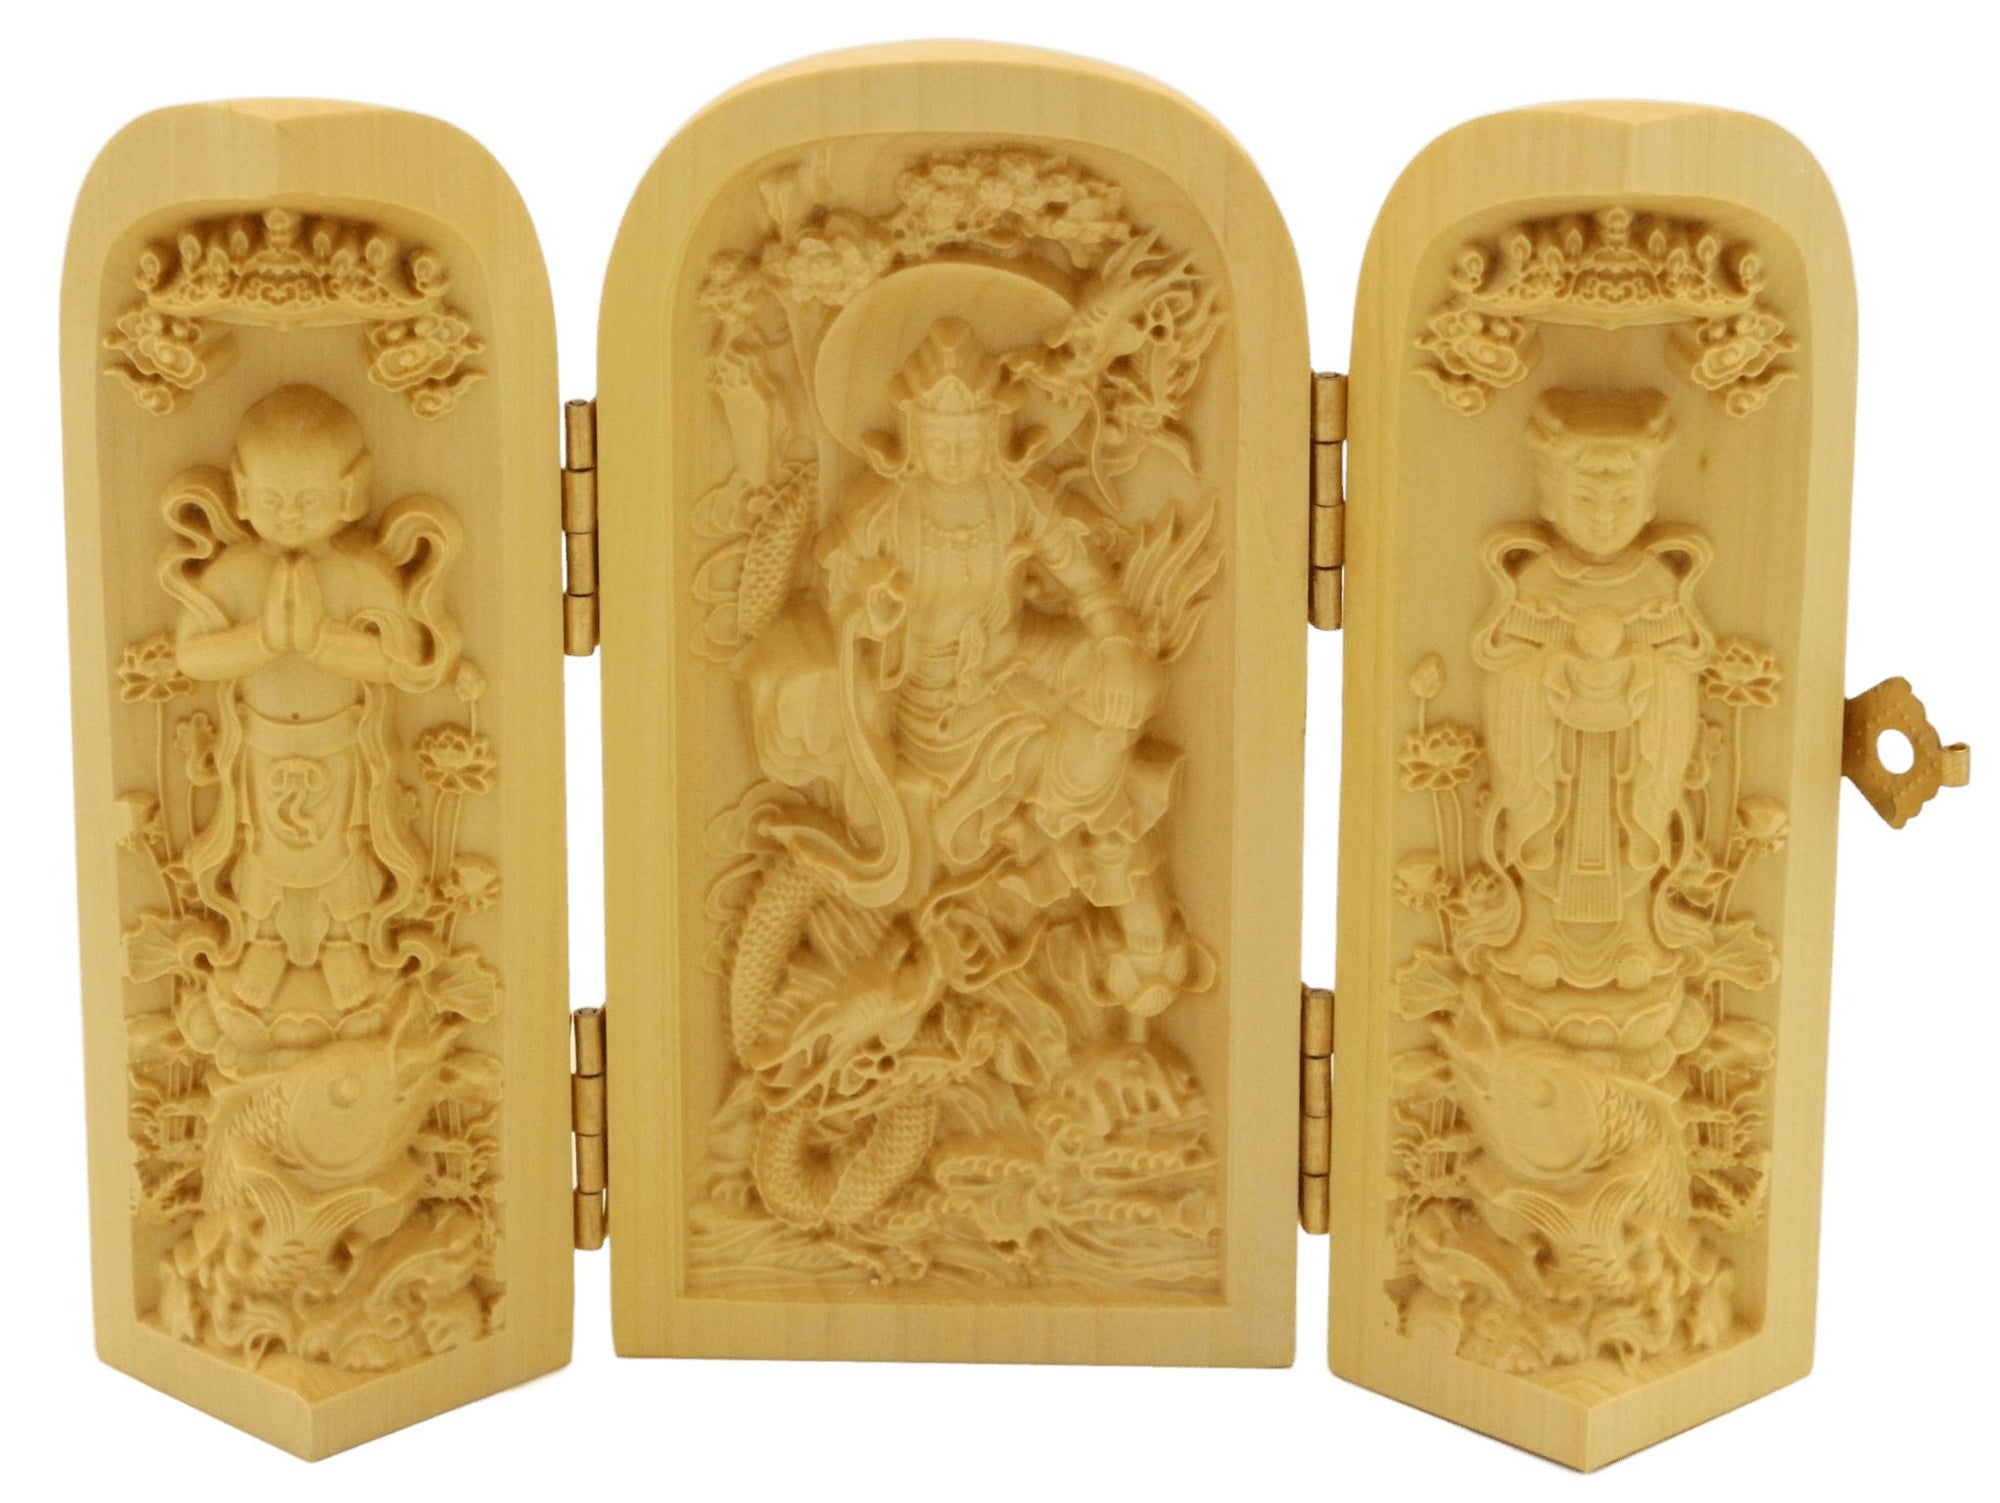 Coffret de 3 statuettes artisanales en bois - Bodhisattva Guanyin - Design 1 Statues Bouddha Artisan d'Asie 